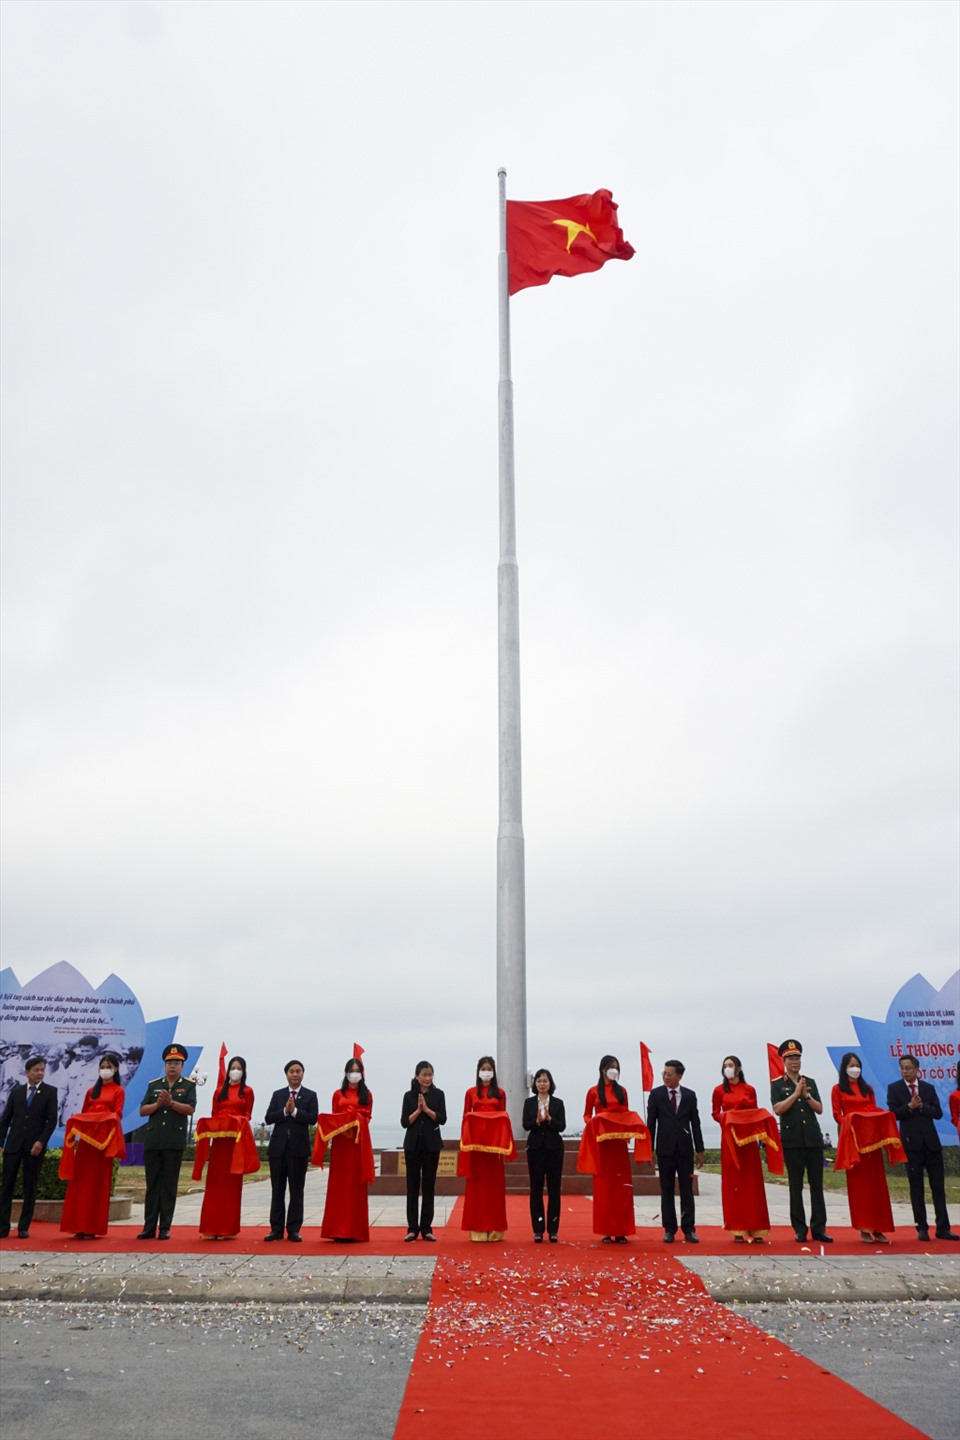 Thiêng liêng lễ thượng cờ và khánh thành cột cờ Tổ quốc trên đảo Cô Tô   Chính trị  Vietnam VietnamPlus